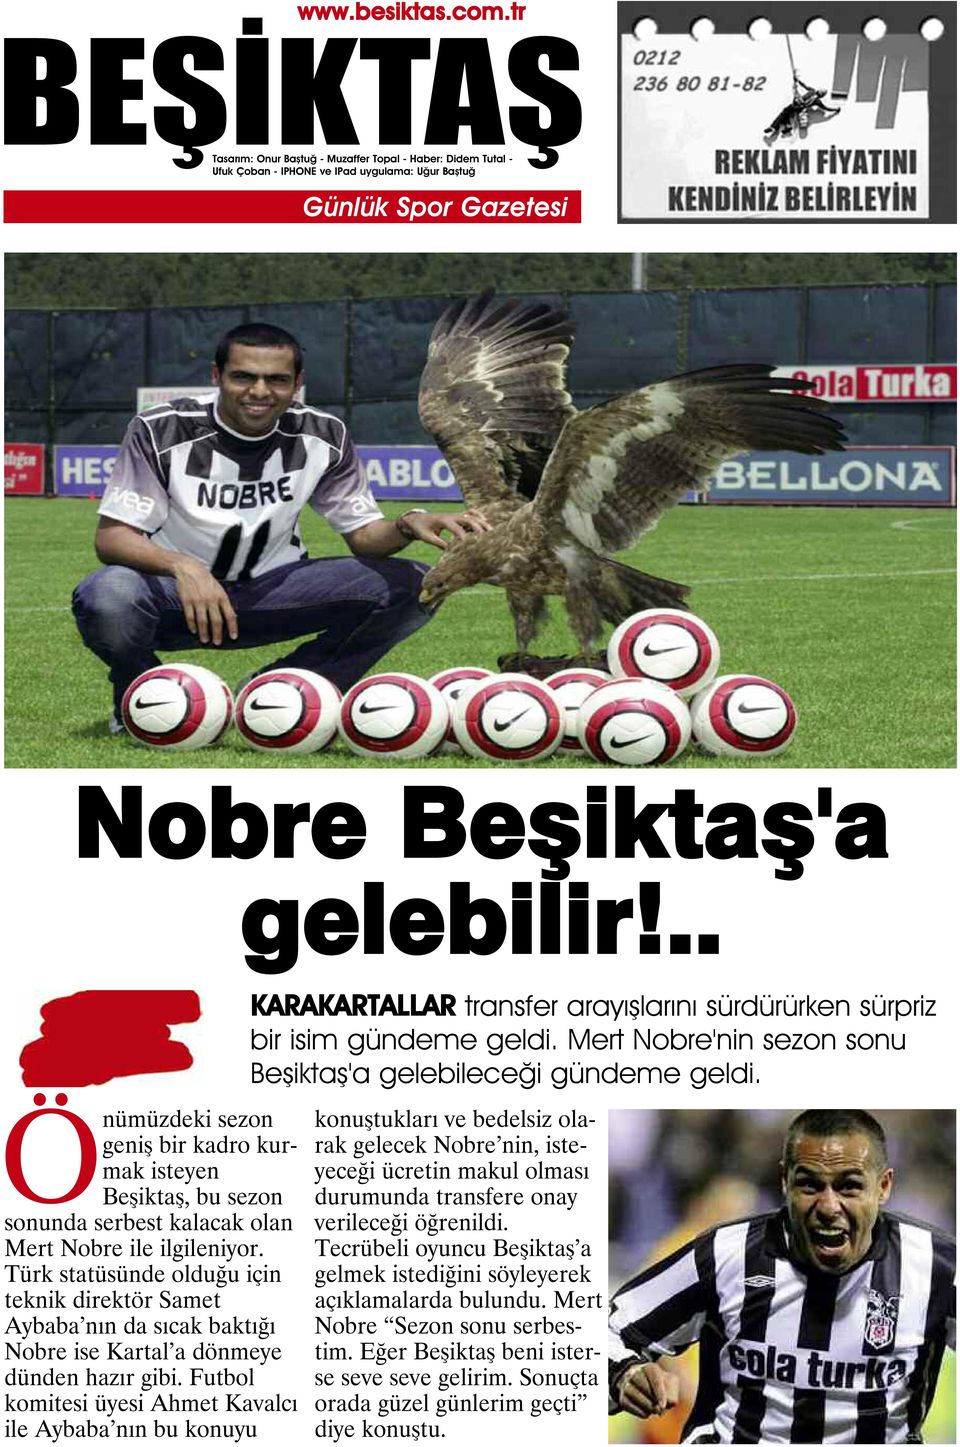 Futbol komitesi üyesi Ahmet Kavalcı ile Aybaba nın bu konuyu KARAKARTALLAR transfer arayışlarını sürdürürken sürpriz bir isim gündeme geldi.